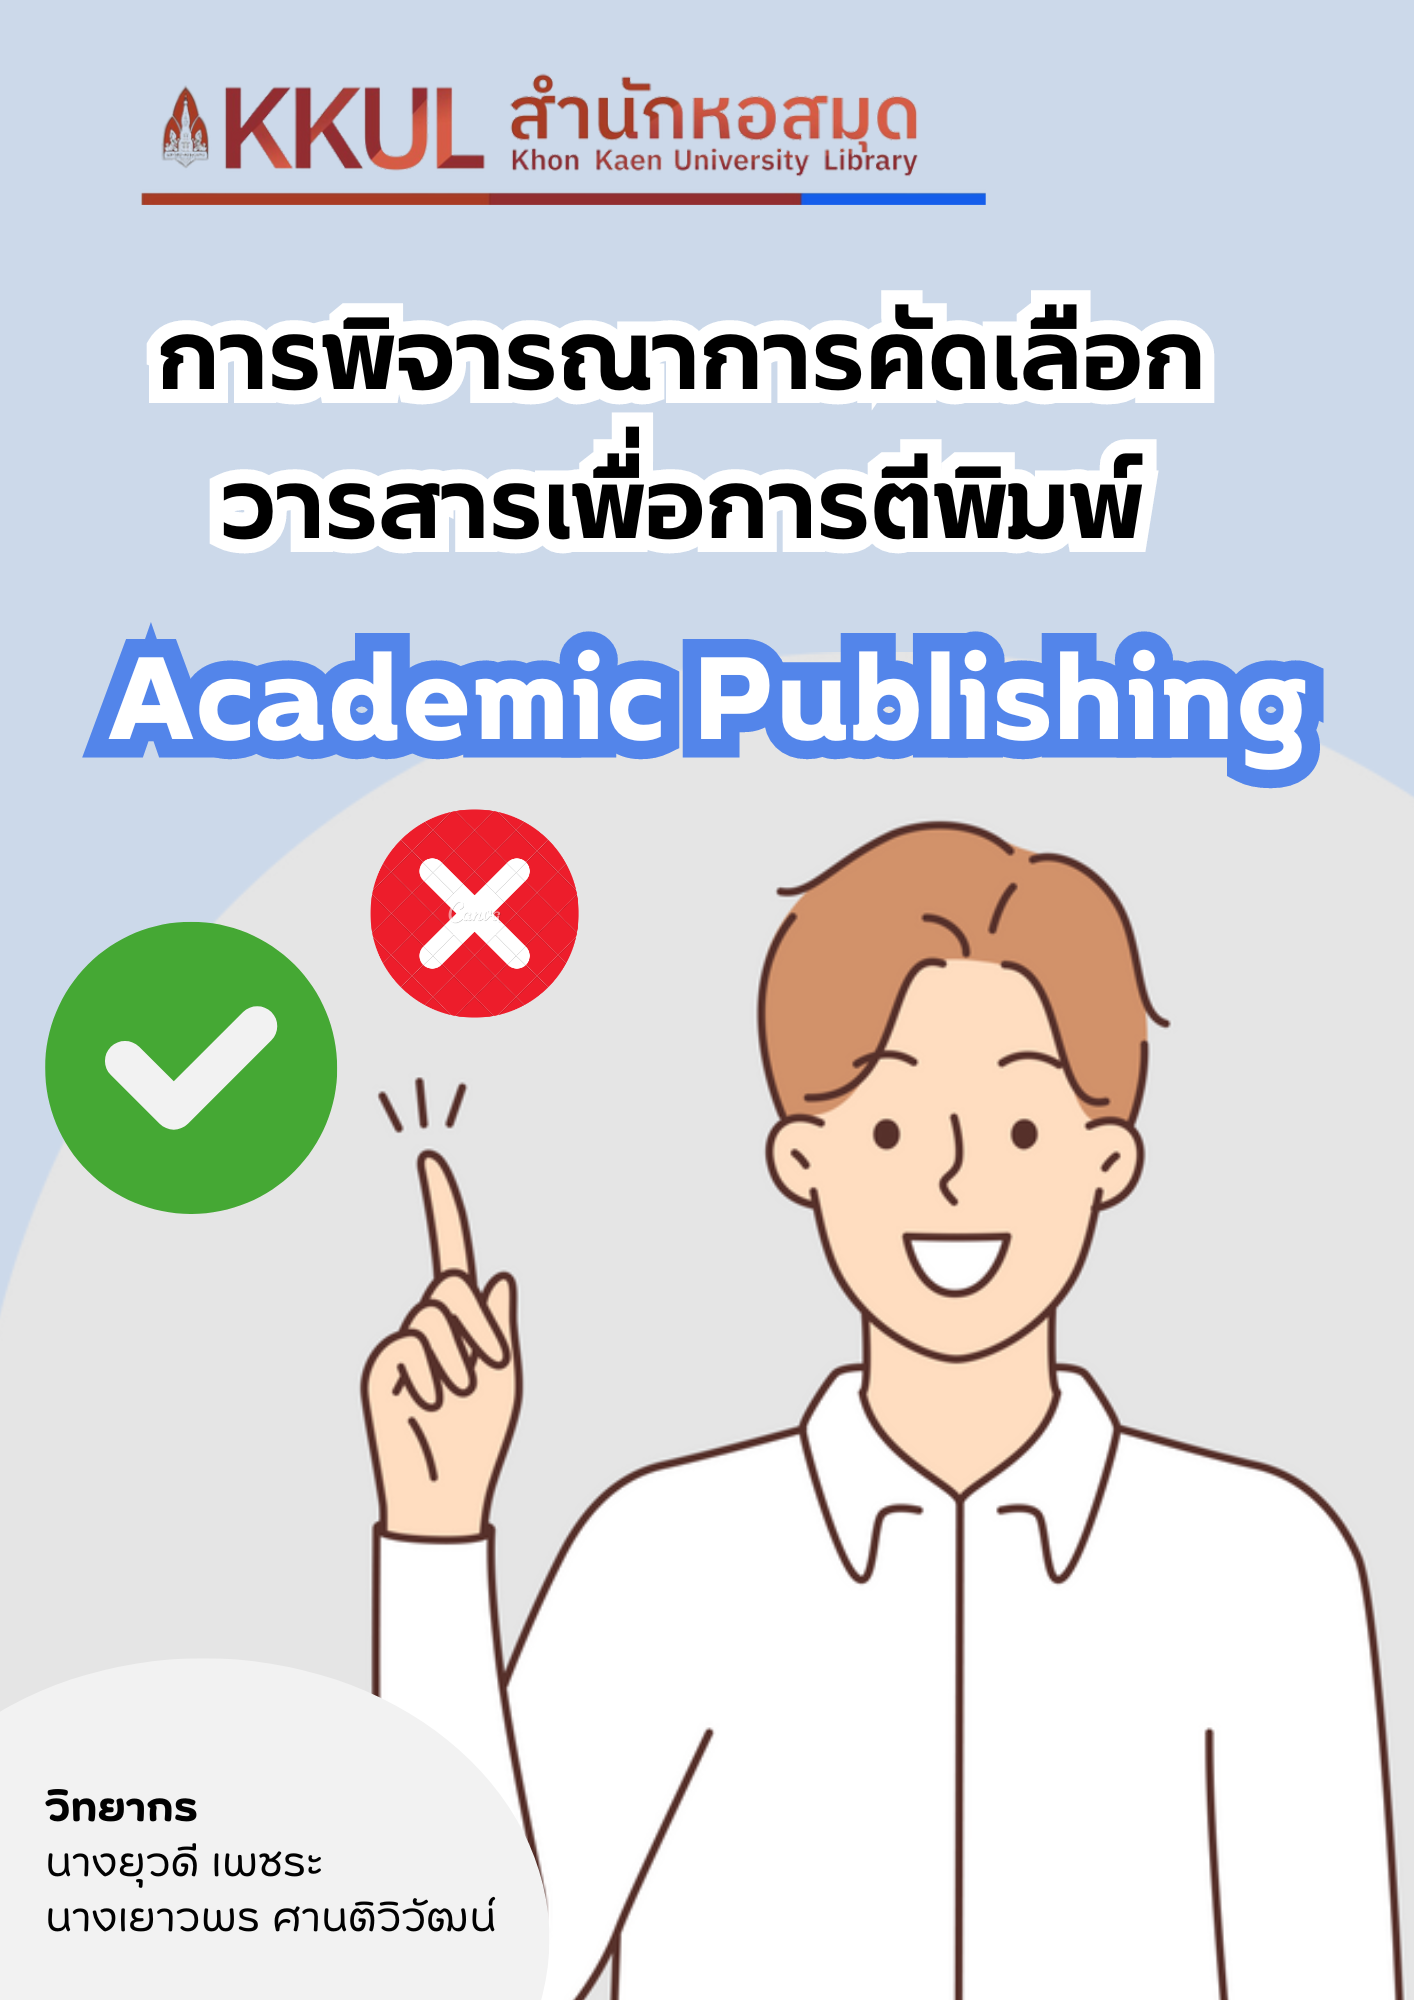 การพิจารณาการคัดเลือกวารสารเพื่อการตีพิมพ์ (Academic Publishing)